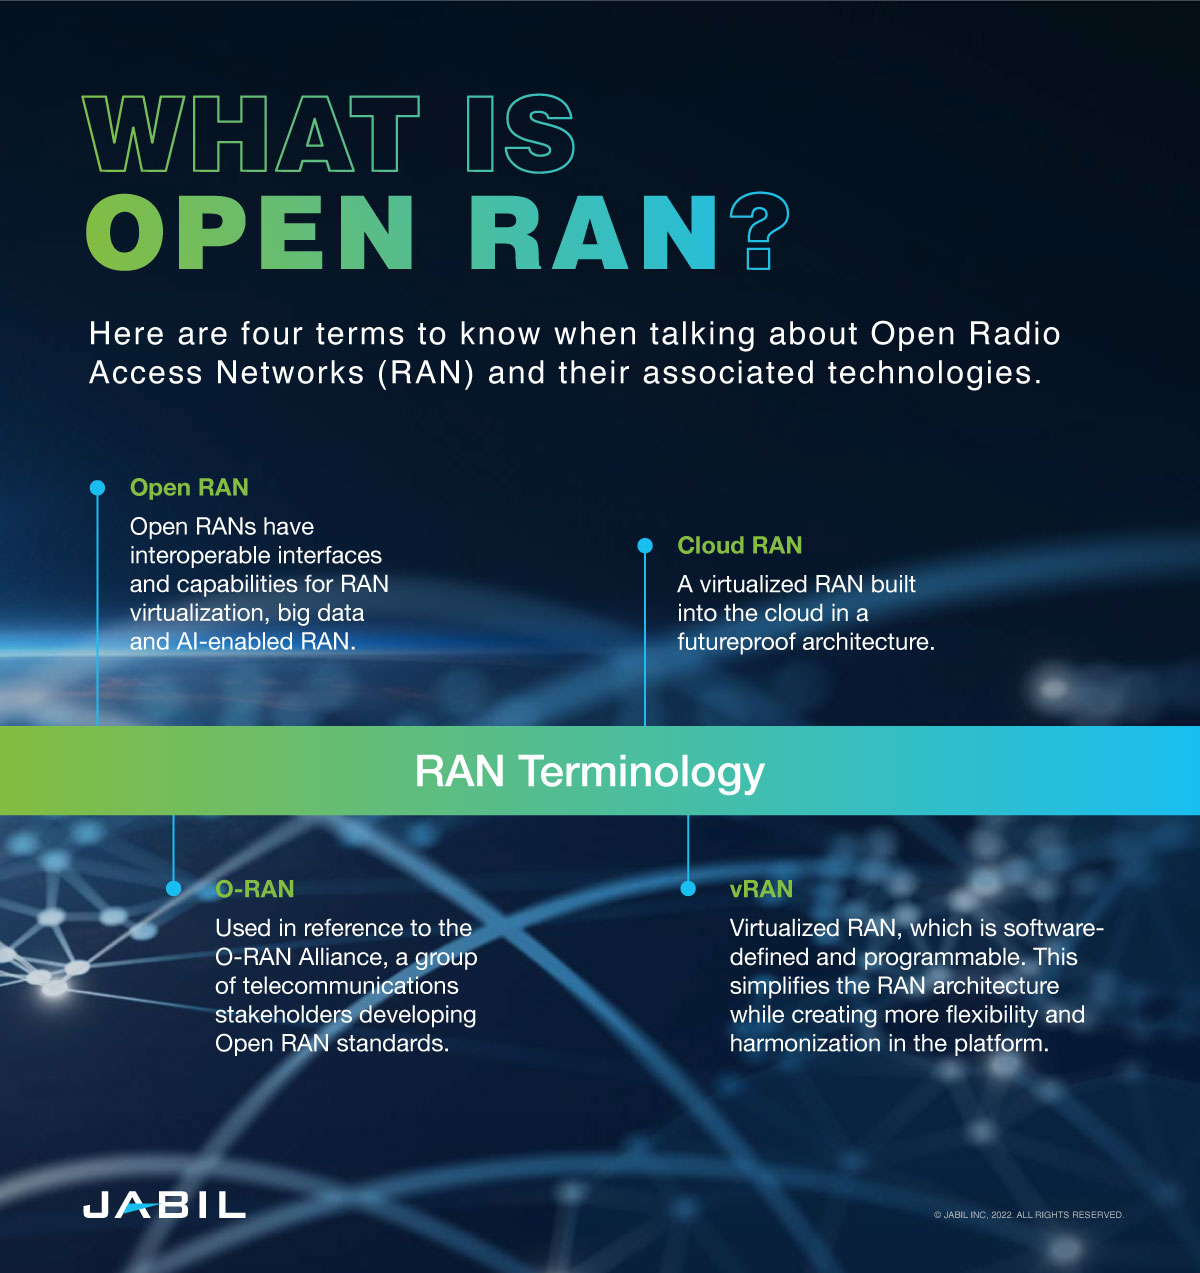 The open RAN